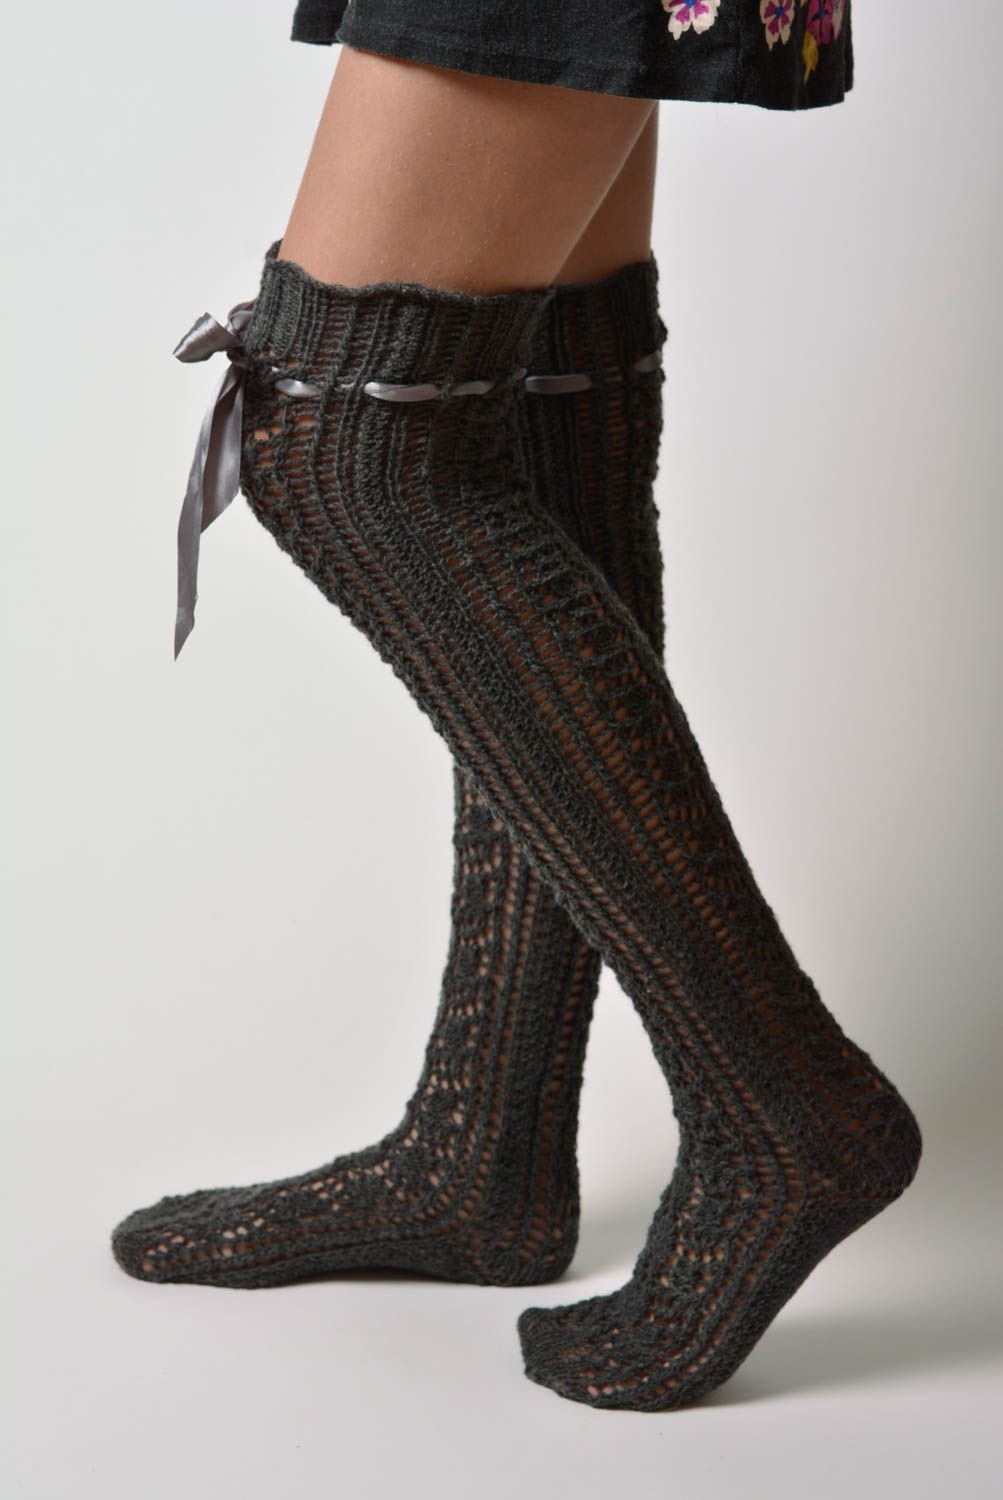 Calcetines femeninos largos de rodilla artesanales tejidos a dos agujas de lana foto 2